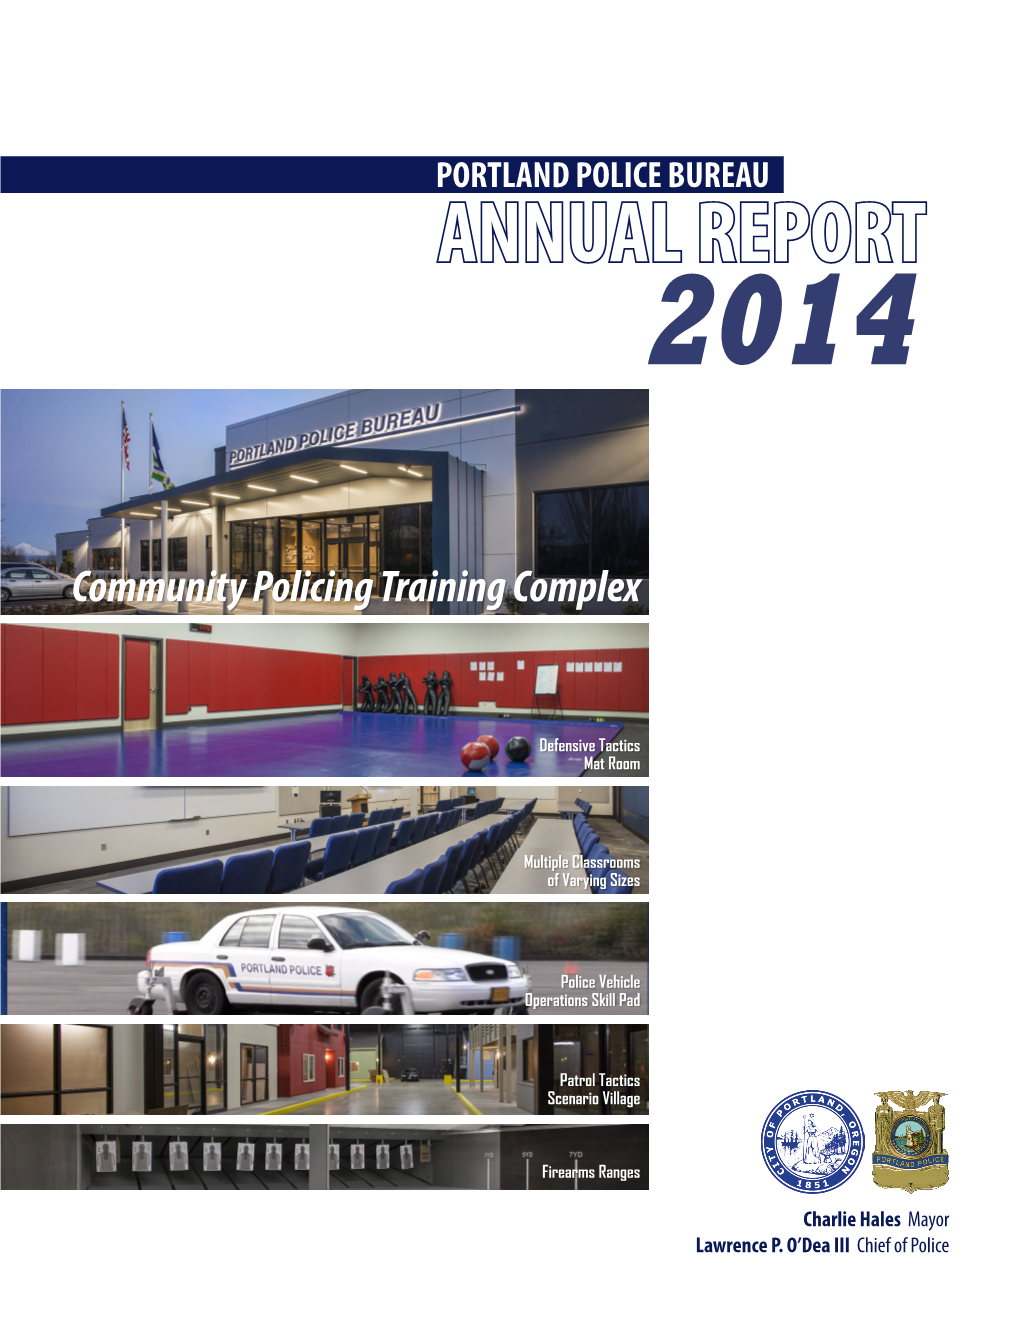 Portland Police Bureau Annual Report 2014